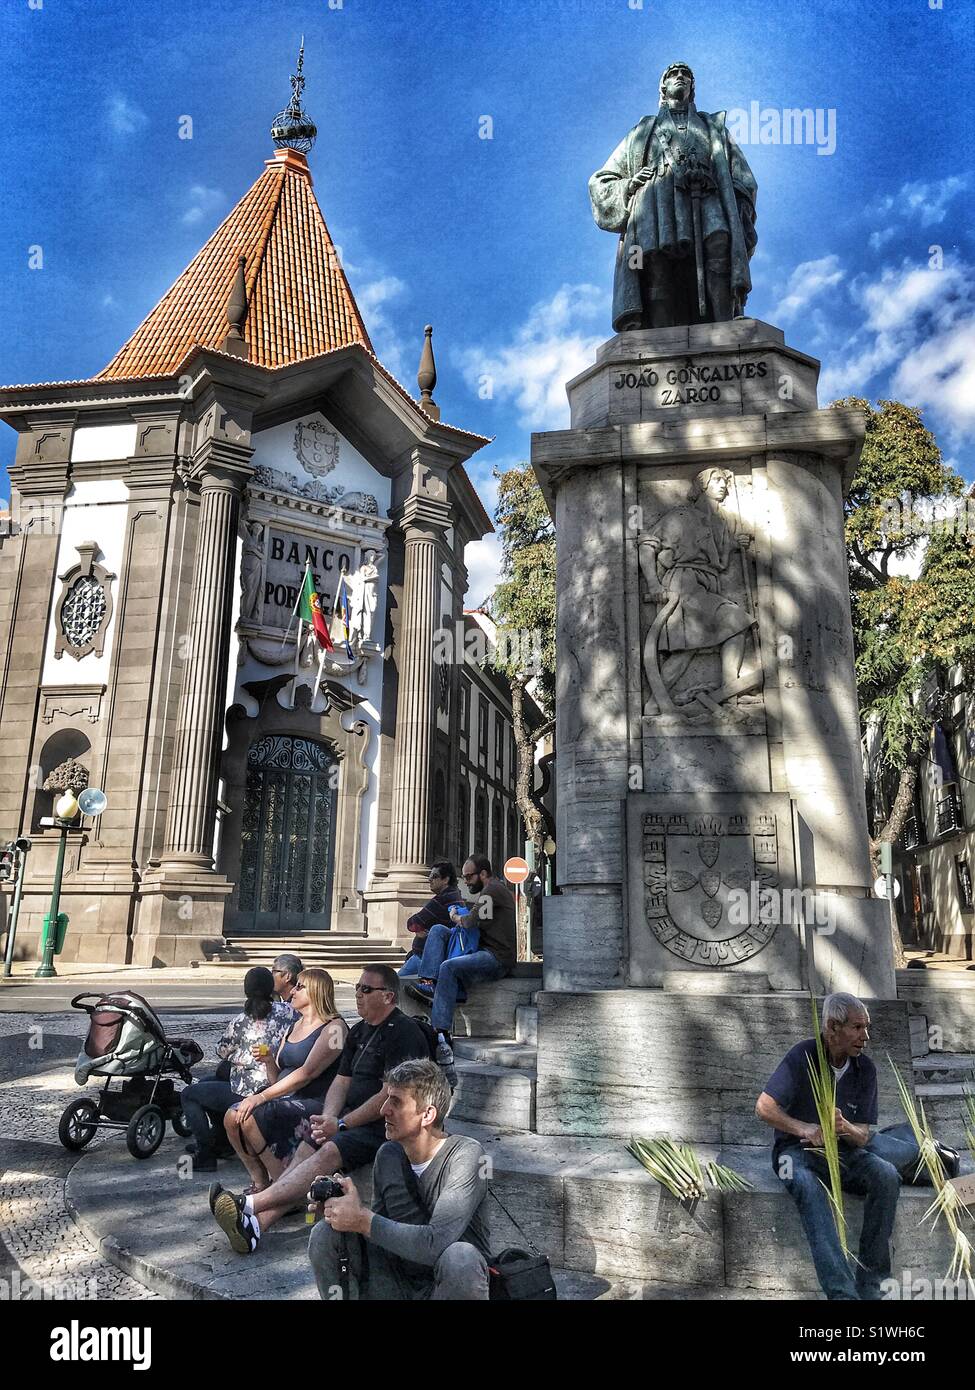 La gente seduta alla base della statua di Zorca, di fronte alla Banca iconica del Portogallo su Av. Arriaga, Funchal, Madeira, Portogallo Foto Stock